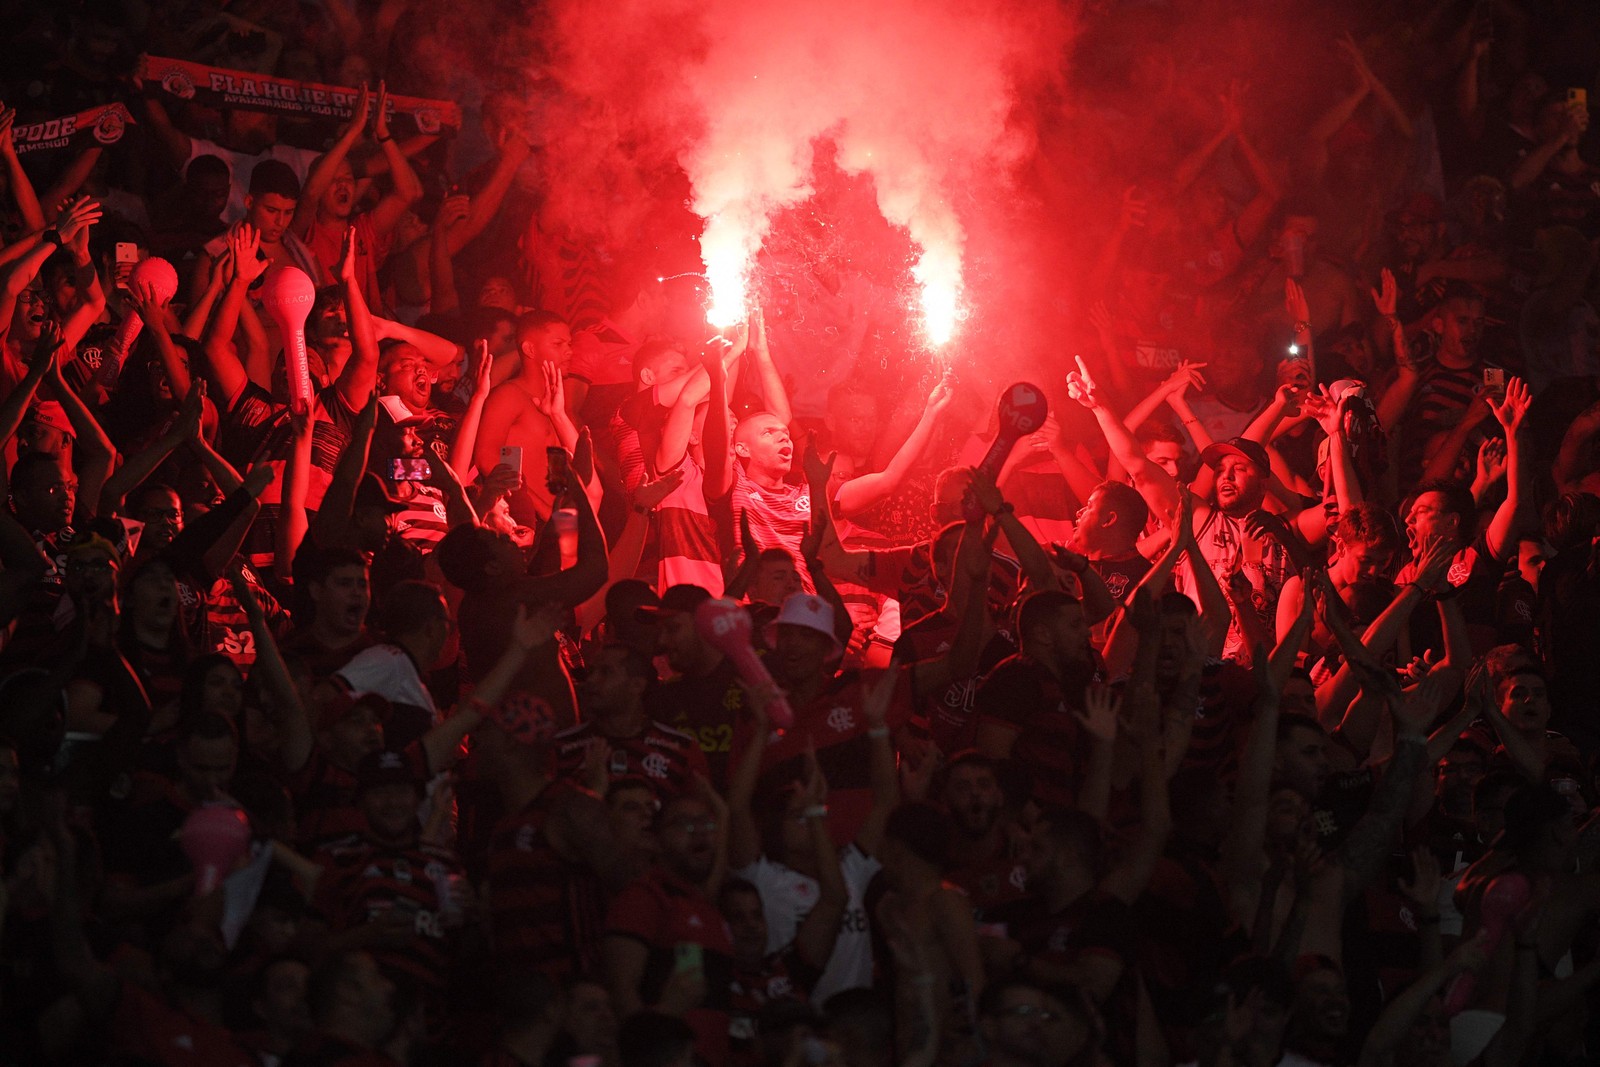 Clima de festa na torcida do Flamengo antes do início da partida — Foto: Carl de Souza / AFP